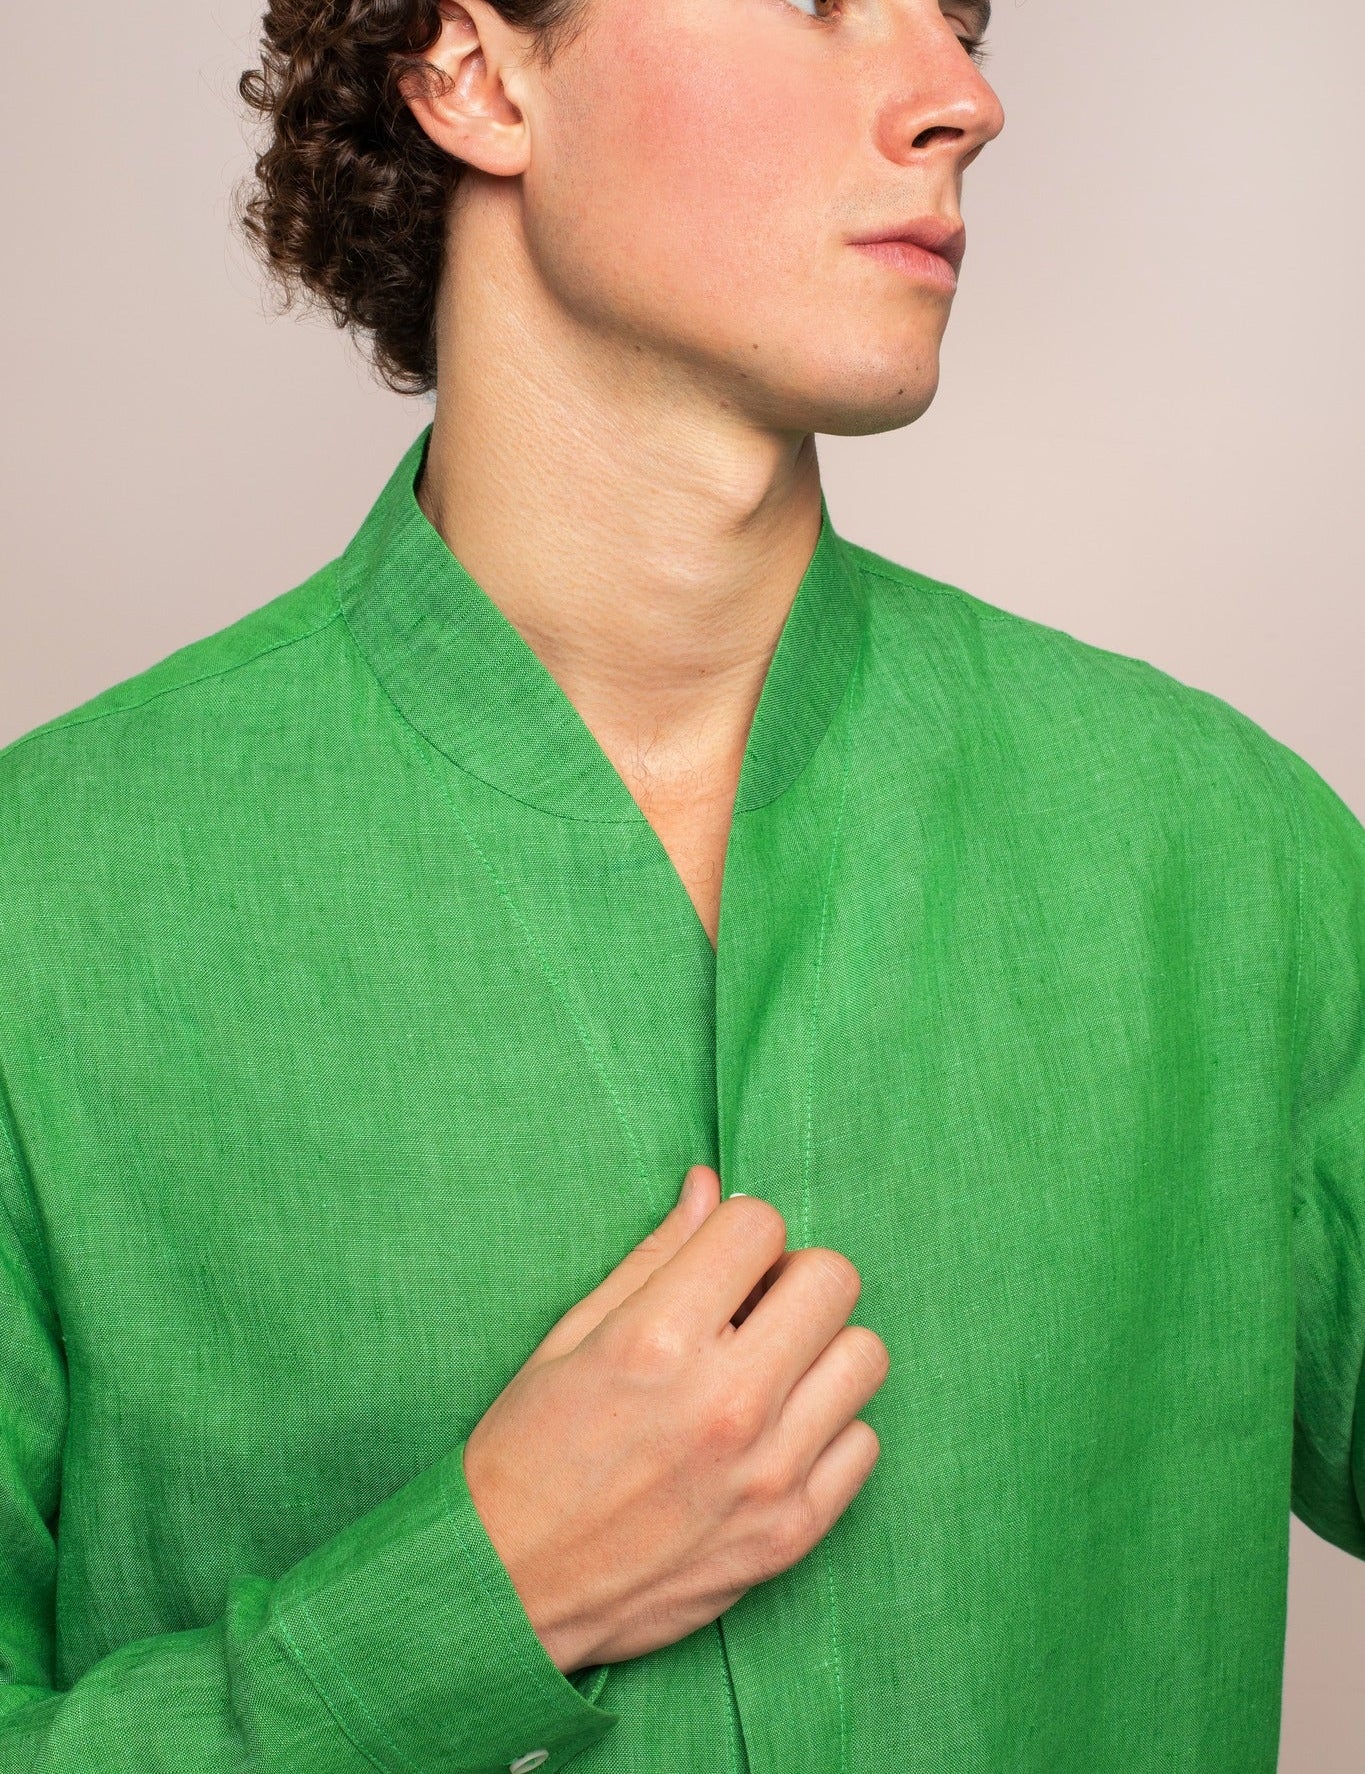 mens-luxury-linen-collarless-shirt-in-green_0261a2e1-8e4f-4c87-8abb-a5940c3d0034.jpg